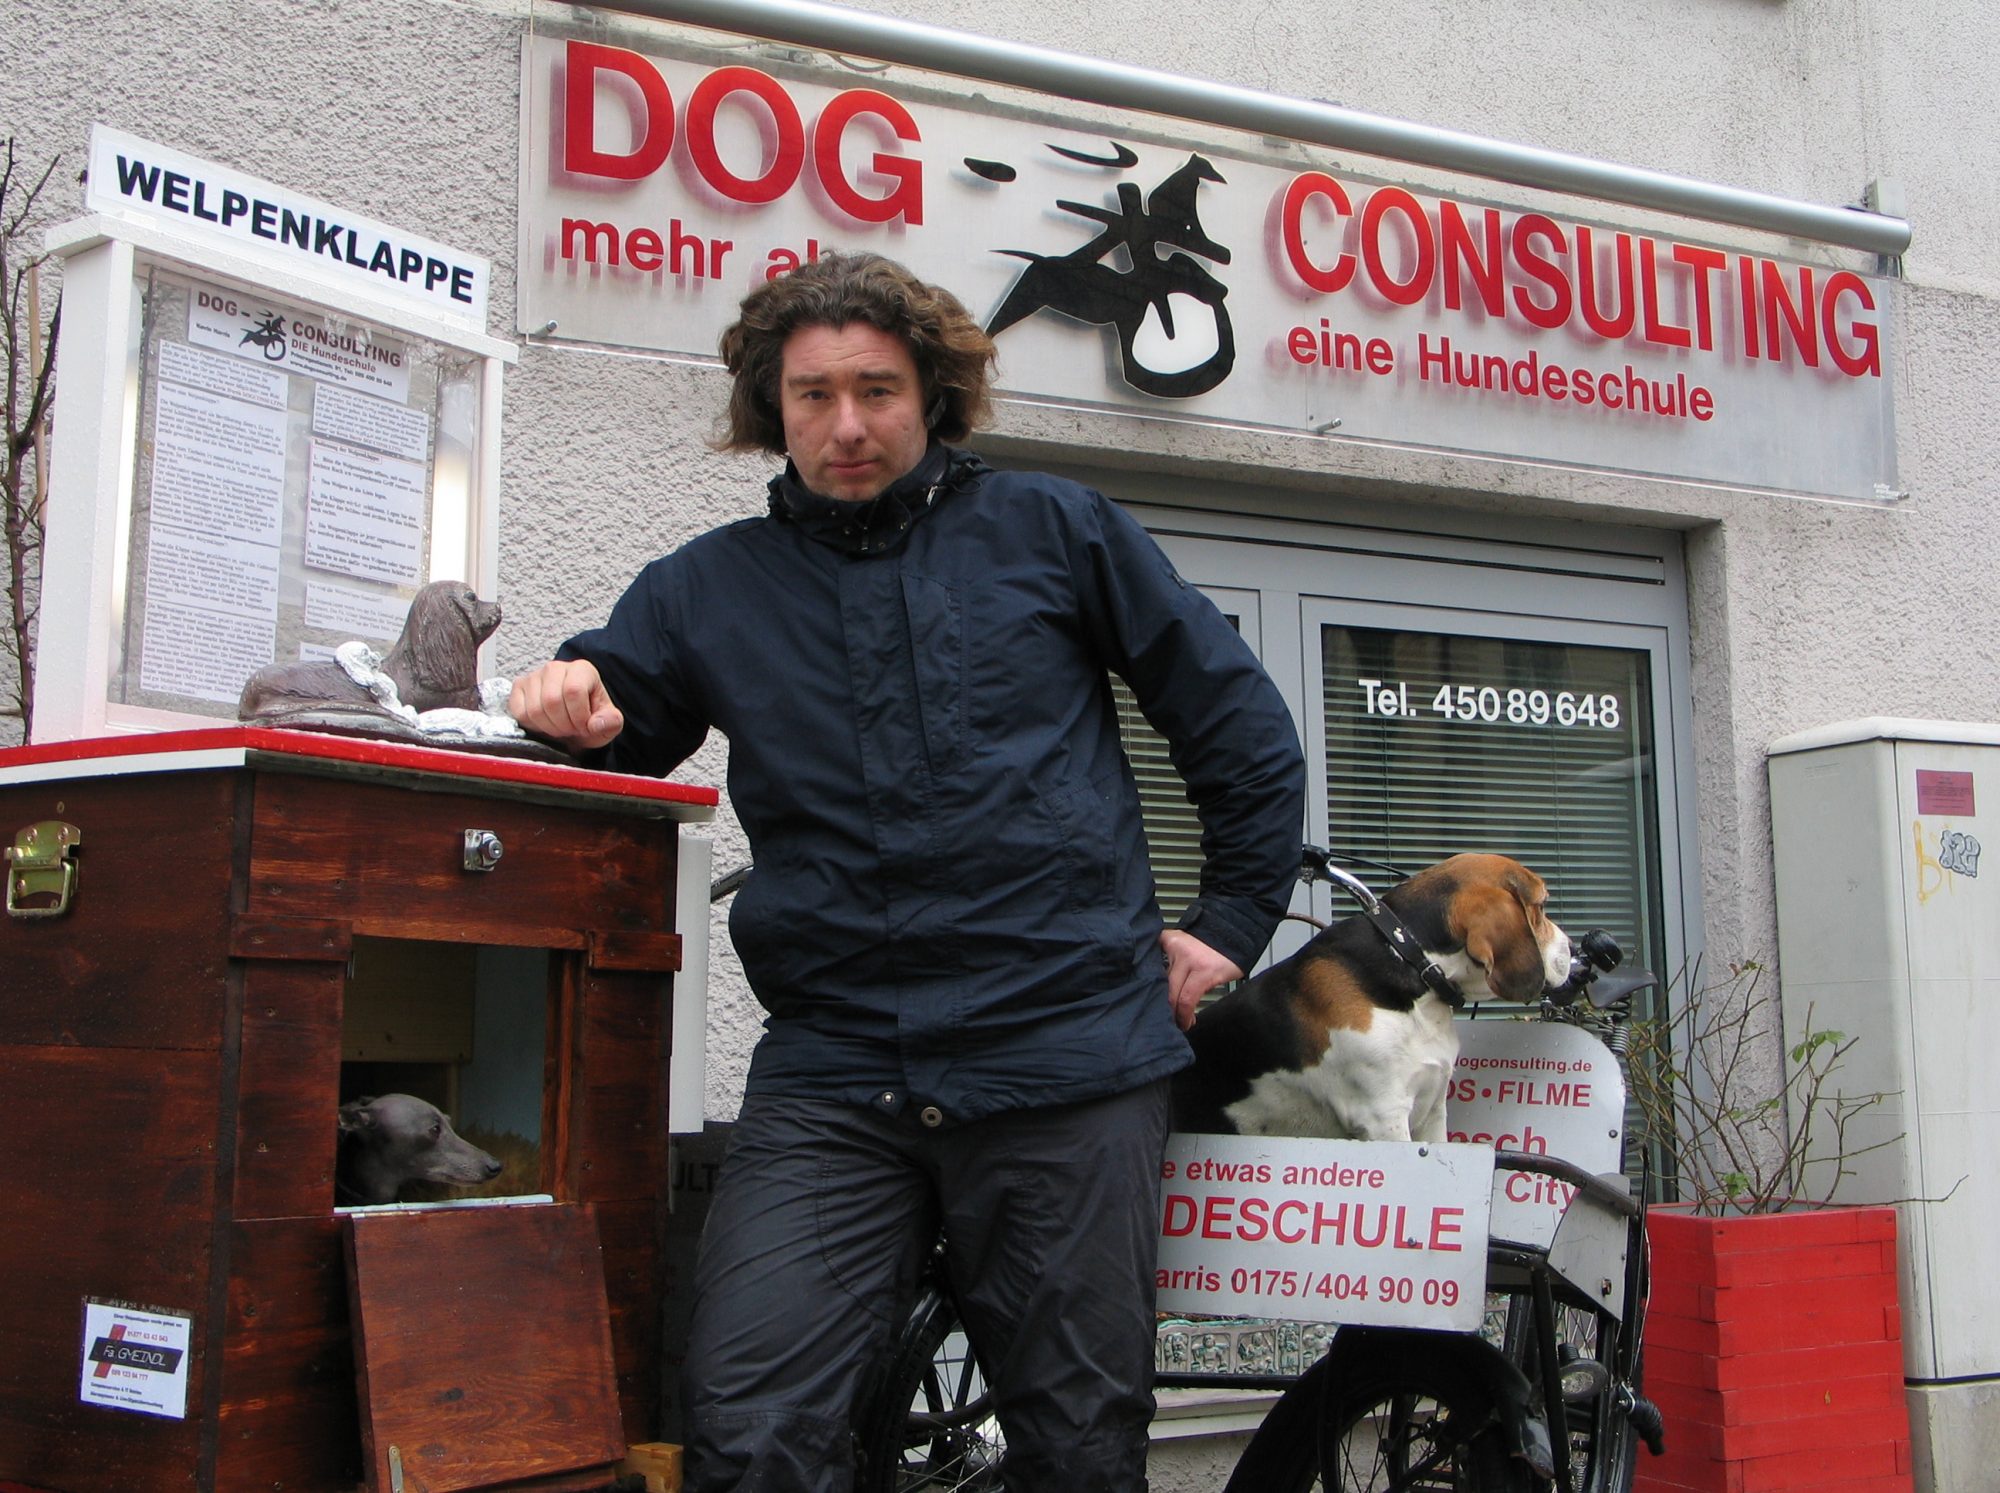 Dogconsulting  eine Hundeschule  & Die Welpenklappe e.V.